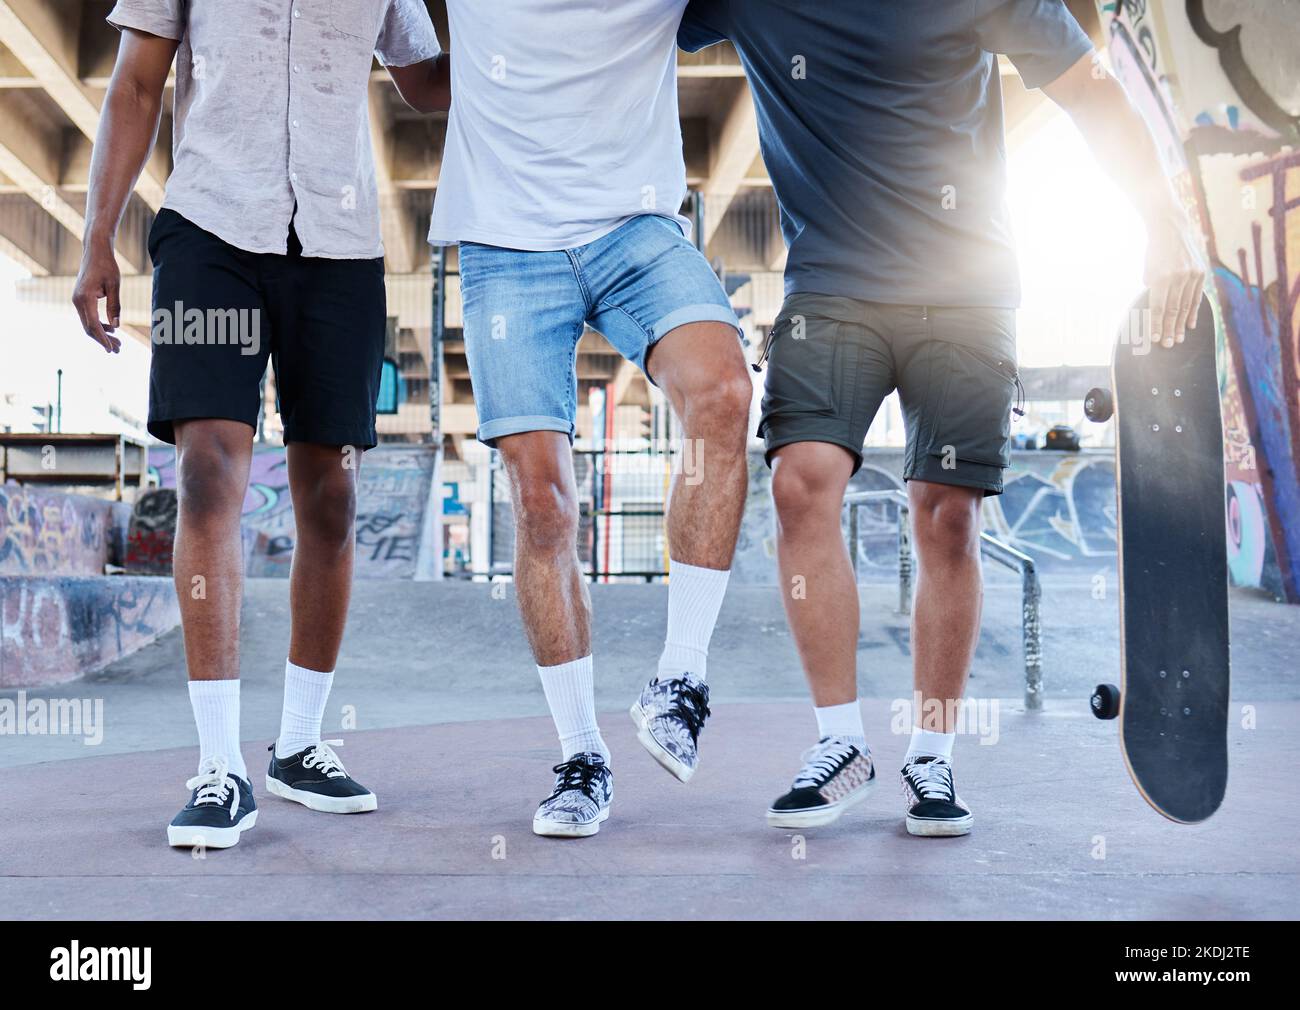 Fitness, planche à roulettes et jambes d'amis dans un parc de skate dans une ville pour l'entraînement, le sport et le plaisir d'été. Chaussures, hommes et groupe de skateboarder marchant avant Banque D'Images